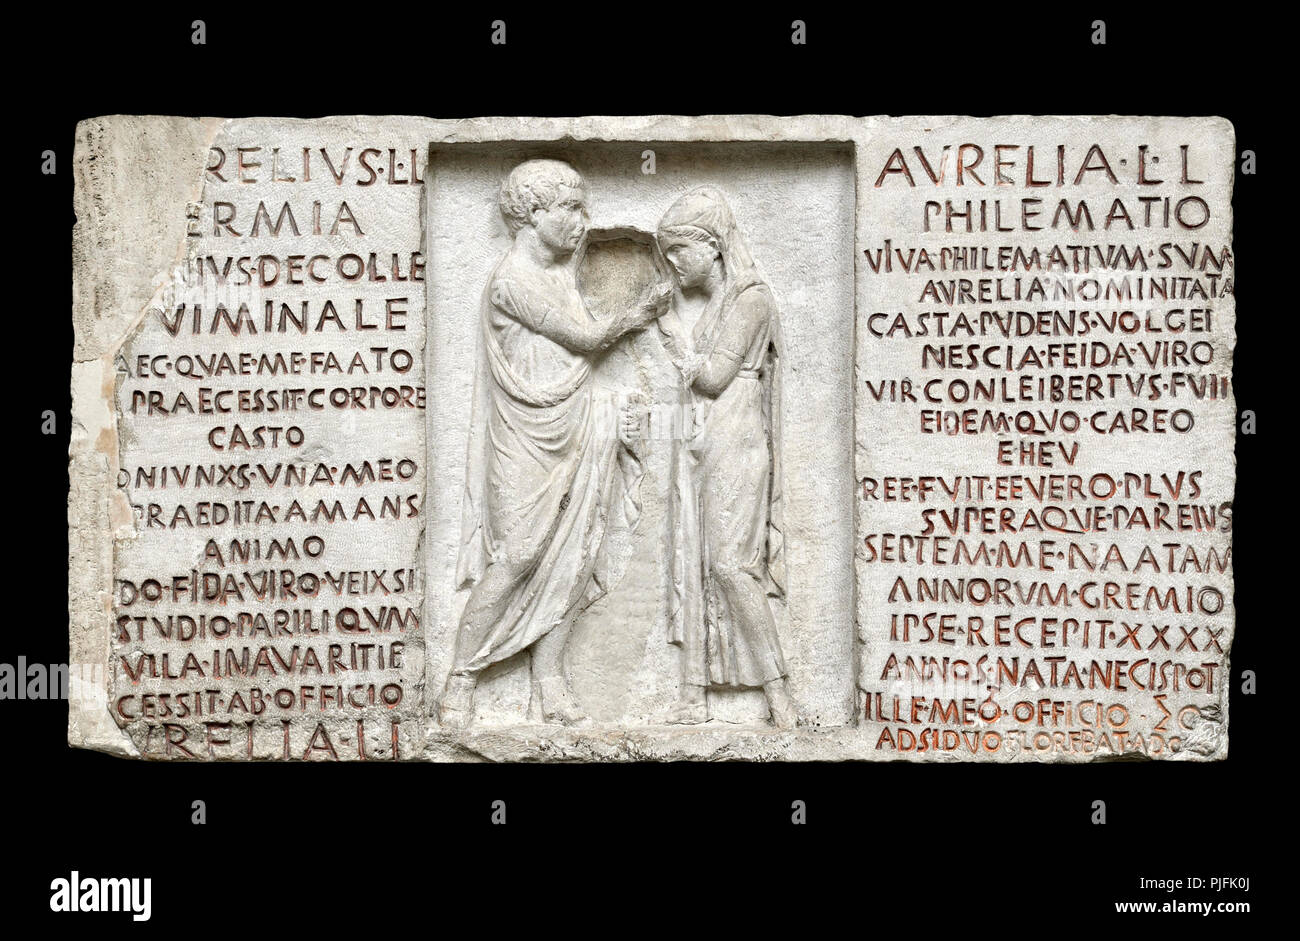 Inscrito funerario tallado de alivio de Aurelius Hermia y su esposa Aurelia Philematum (Roman c80BC) de una tumba por la Via Nomentana, Roma. (Recorte) Britis Foto de stock